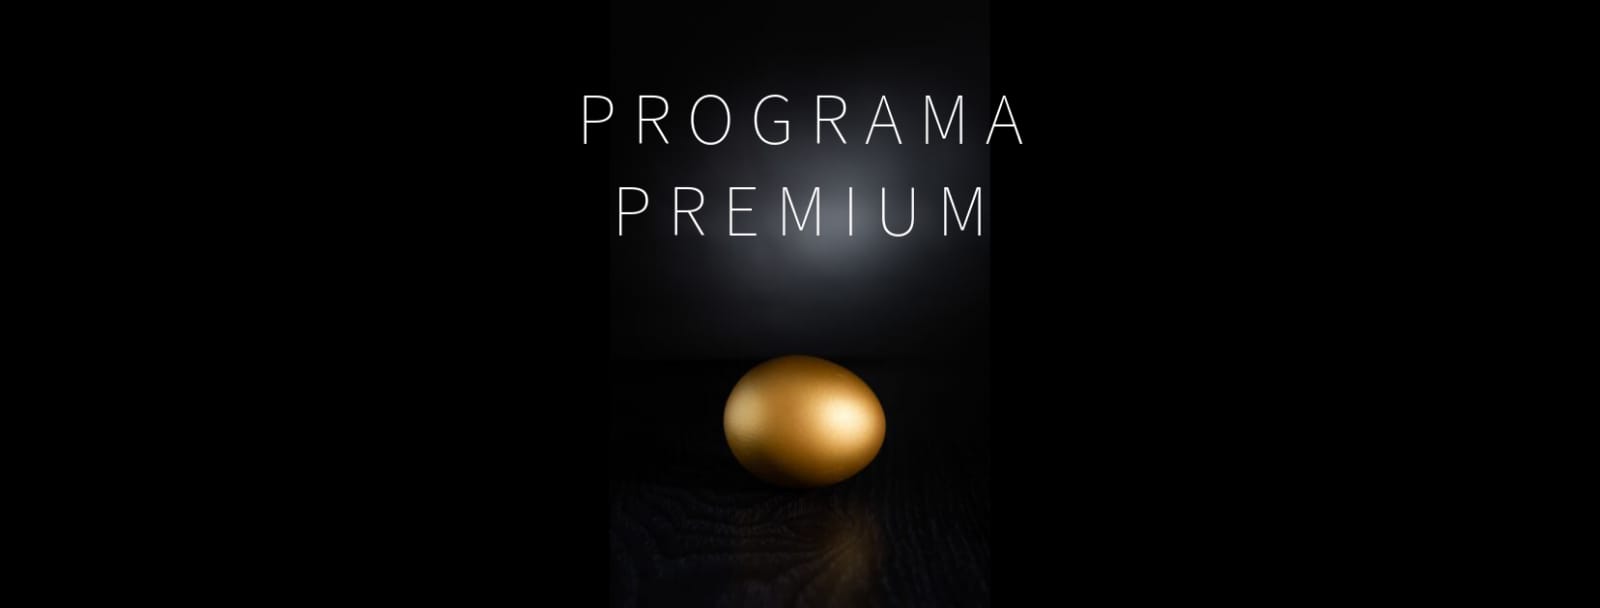 Programa premium